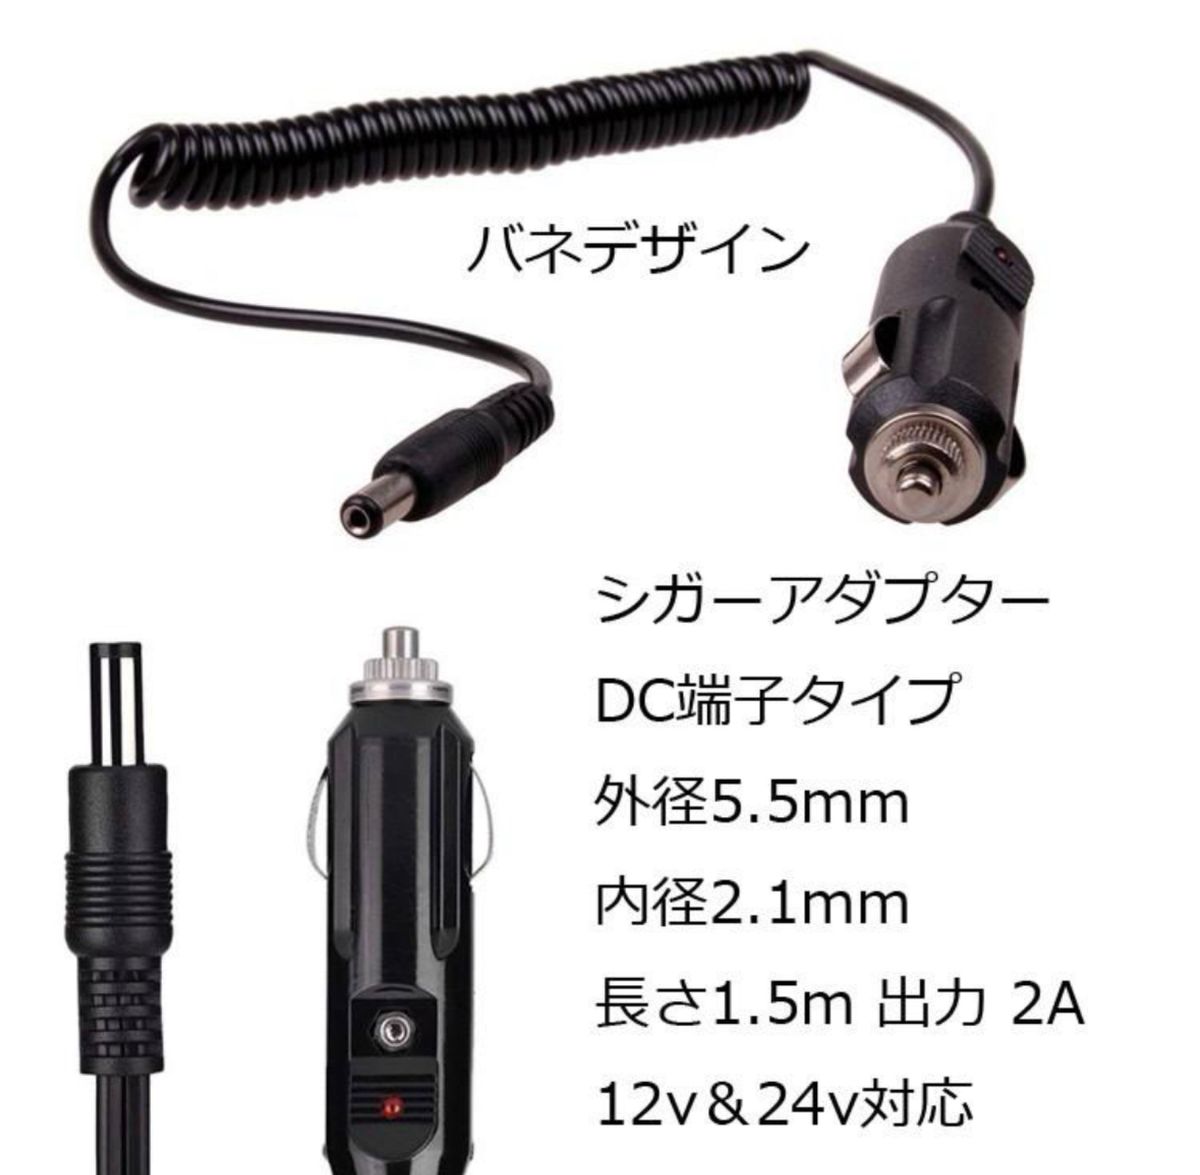 【未使用品】シガーアダプター DC端子タイプ 12v 24v対応 車載アダプター